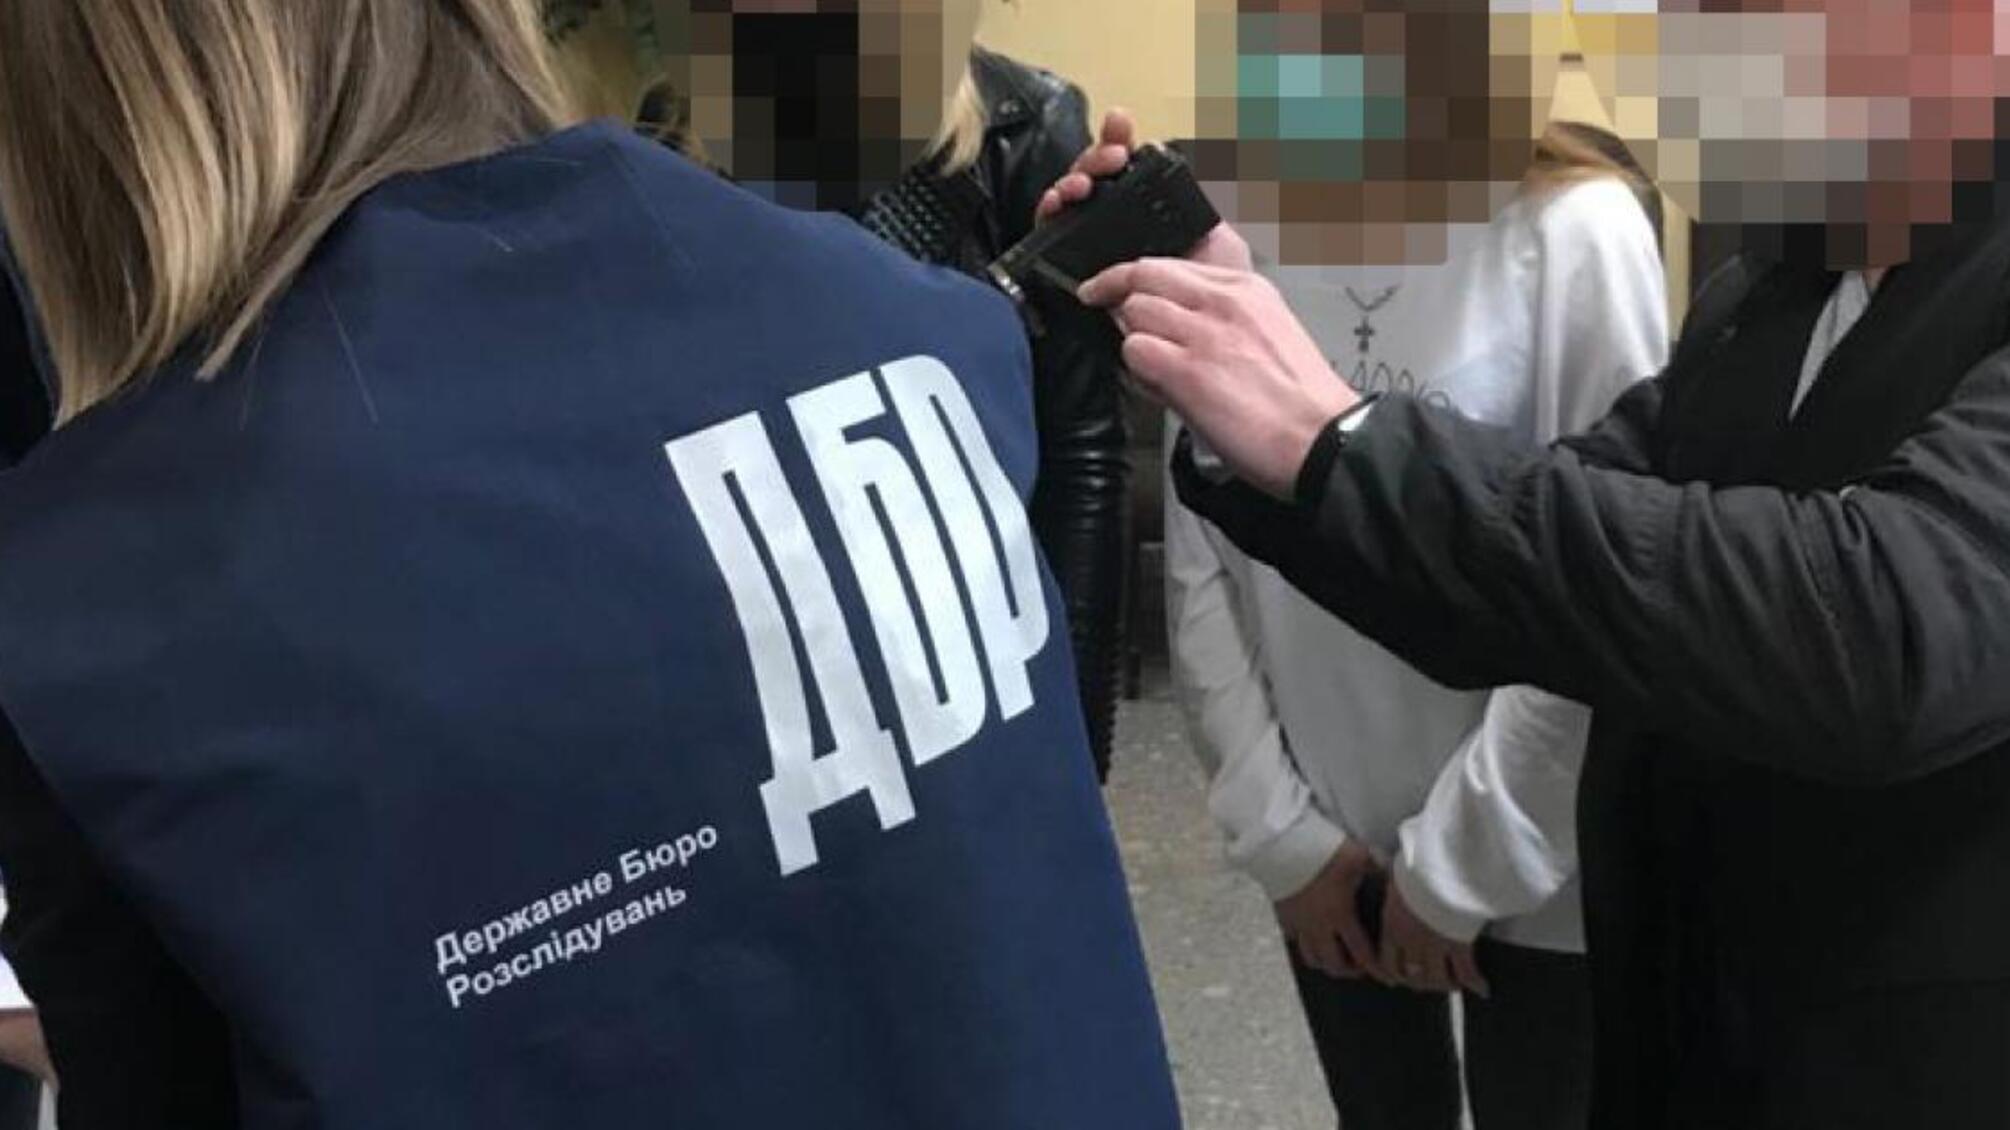 42 000 гривень за повернення арештованого майна - ДБР затримало посадовицю Нацполіції